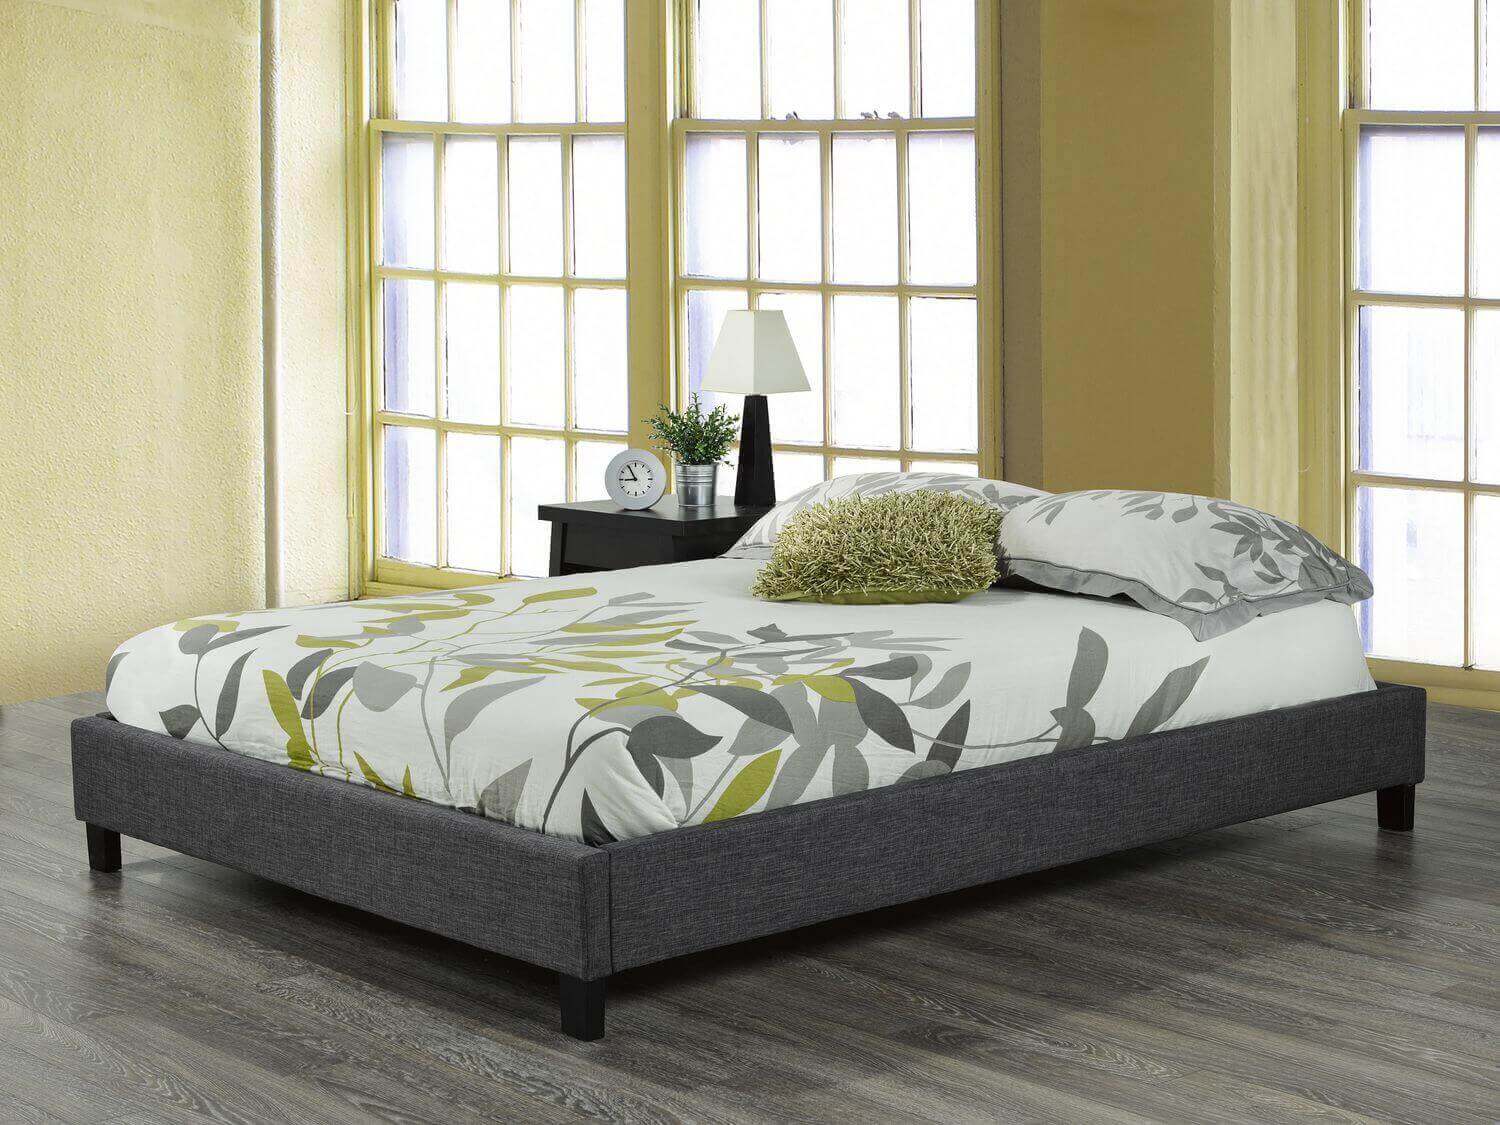 bed base under mattress